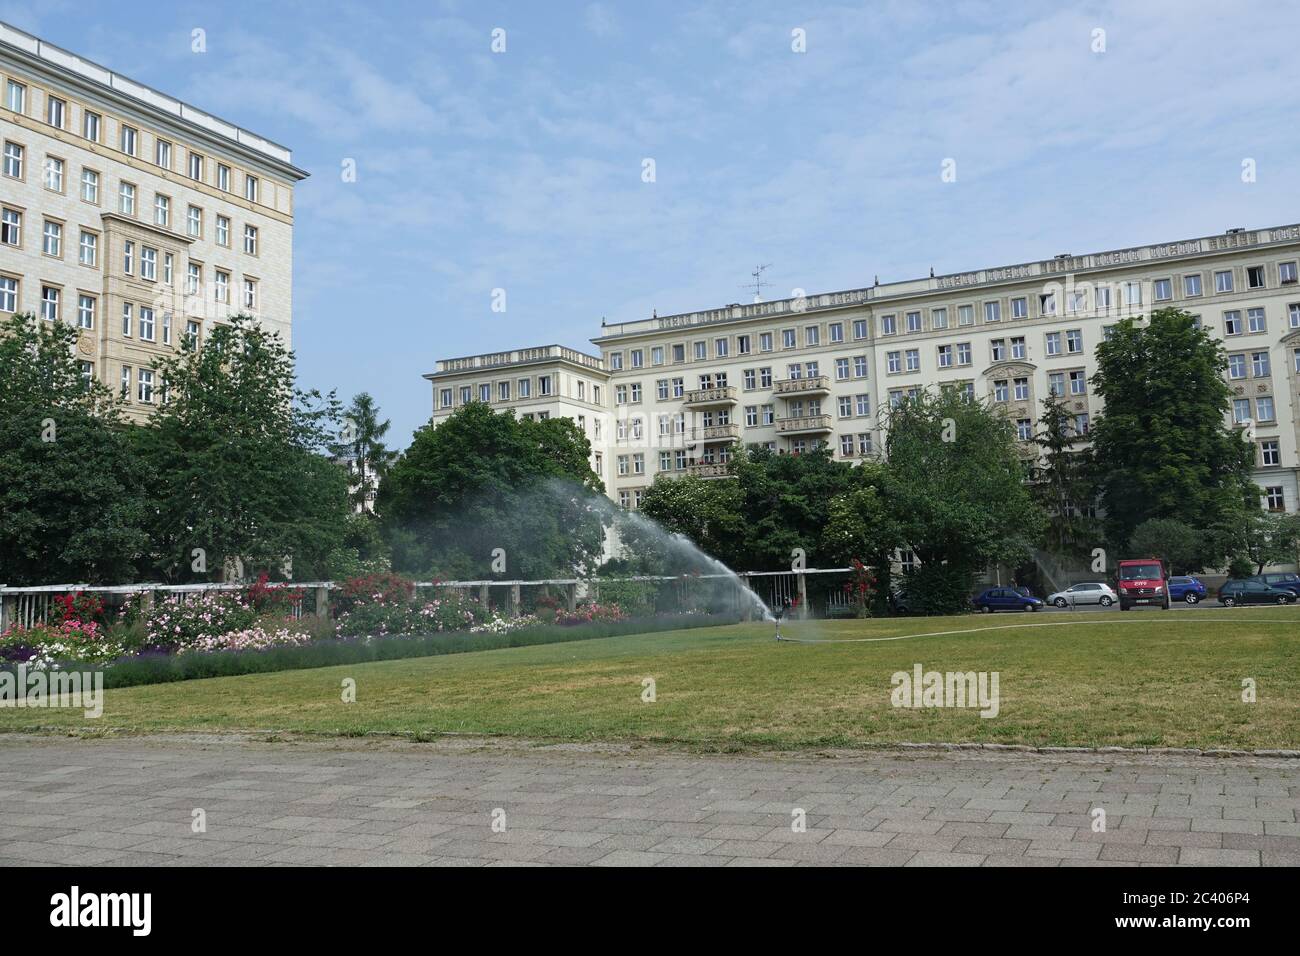 Berlin, Allemagne. 12 juin 2020. La pelouse du jardin de roses de Karl-Marx-Allee est arrosée. Crédit : Alexandra Schuler/dpa/Alay Live News Banque D'Images